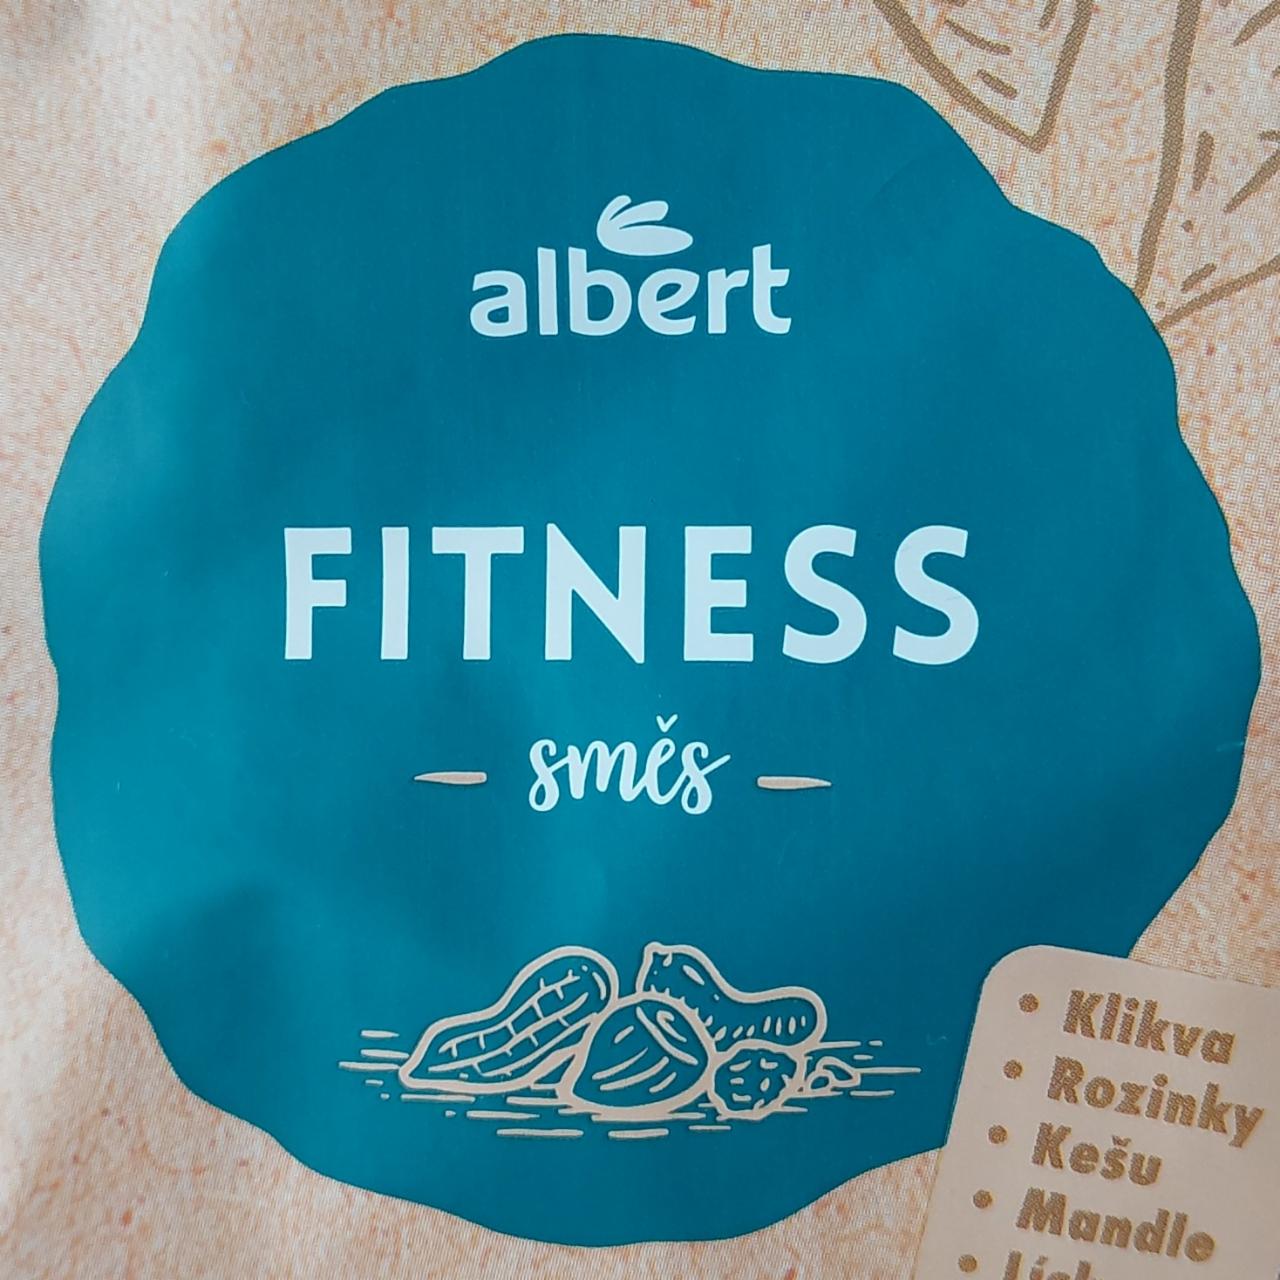 Fotografie - Fitness směs skořápkové plody Albert